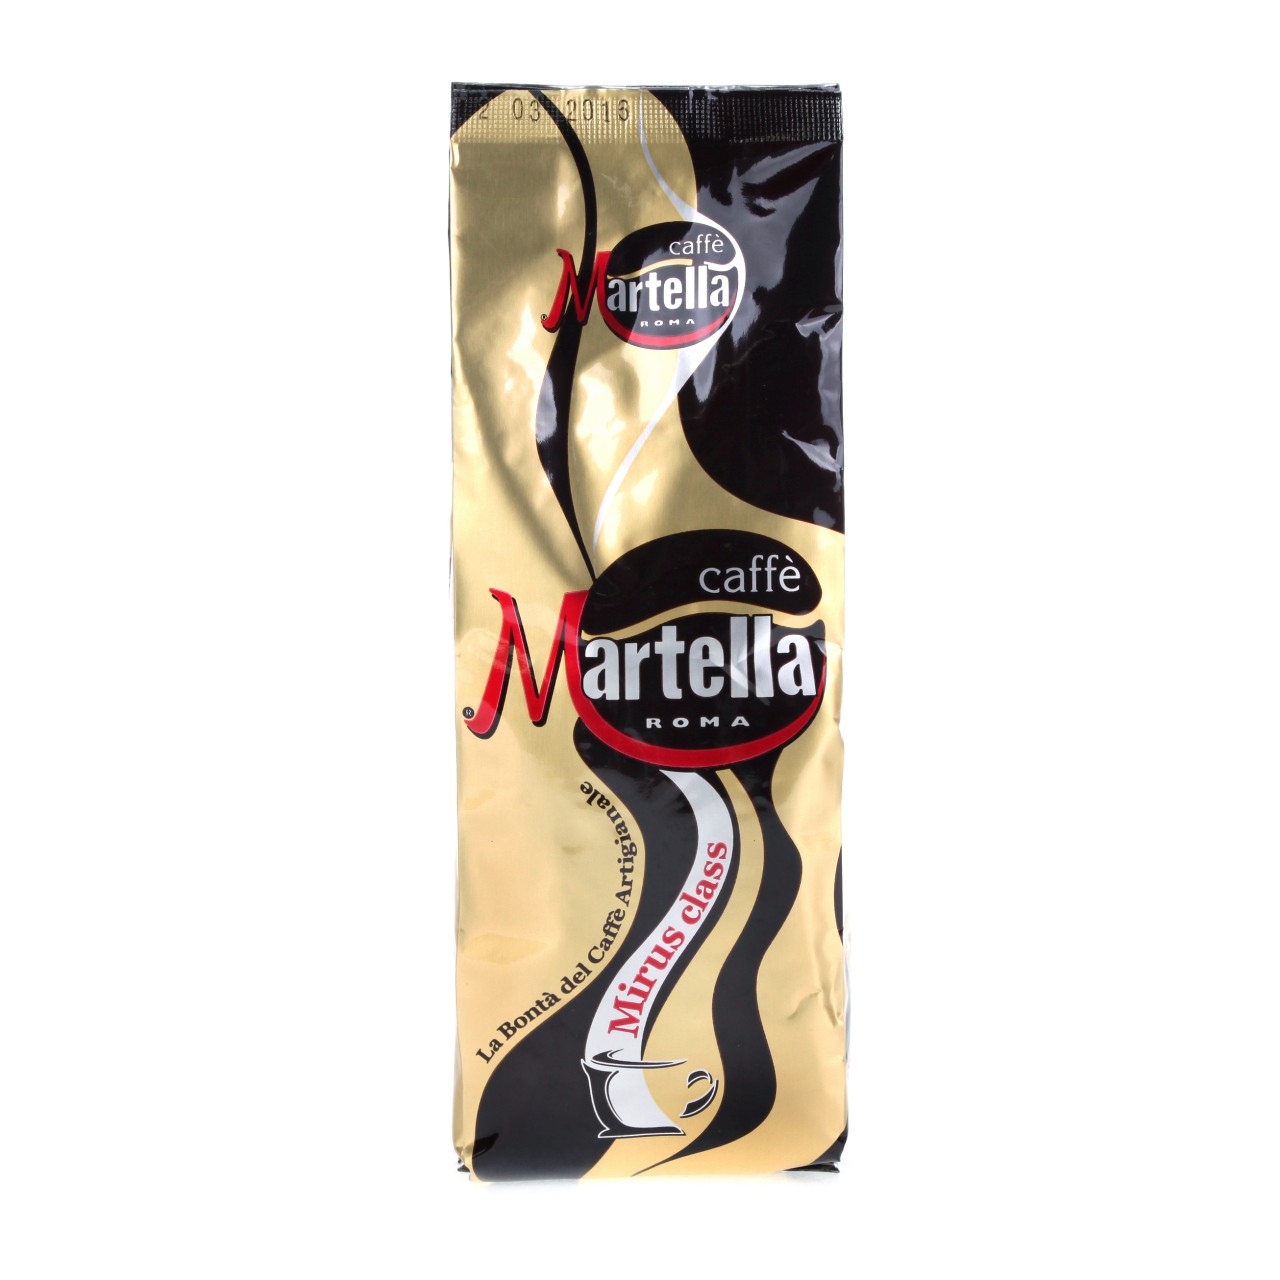 Martella Mirus Class